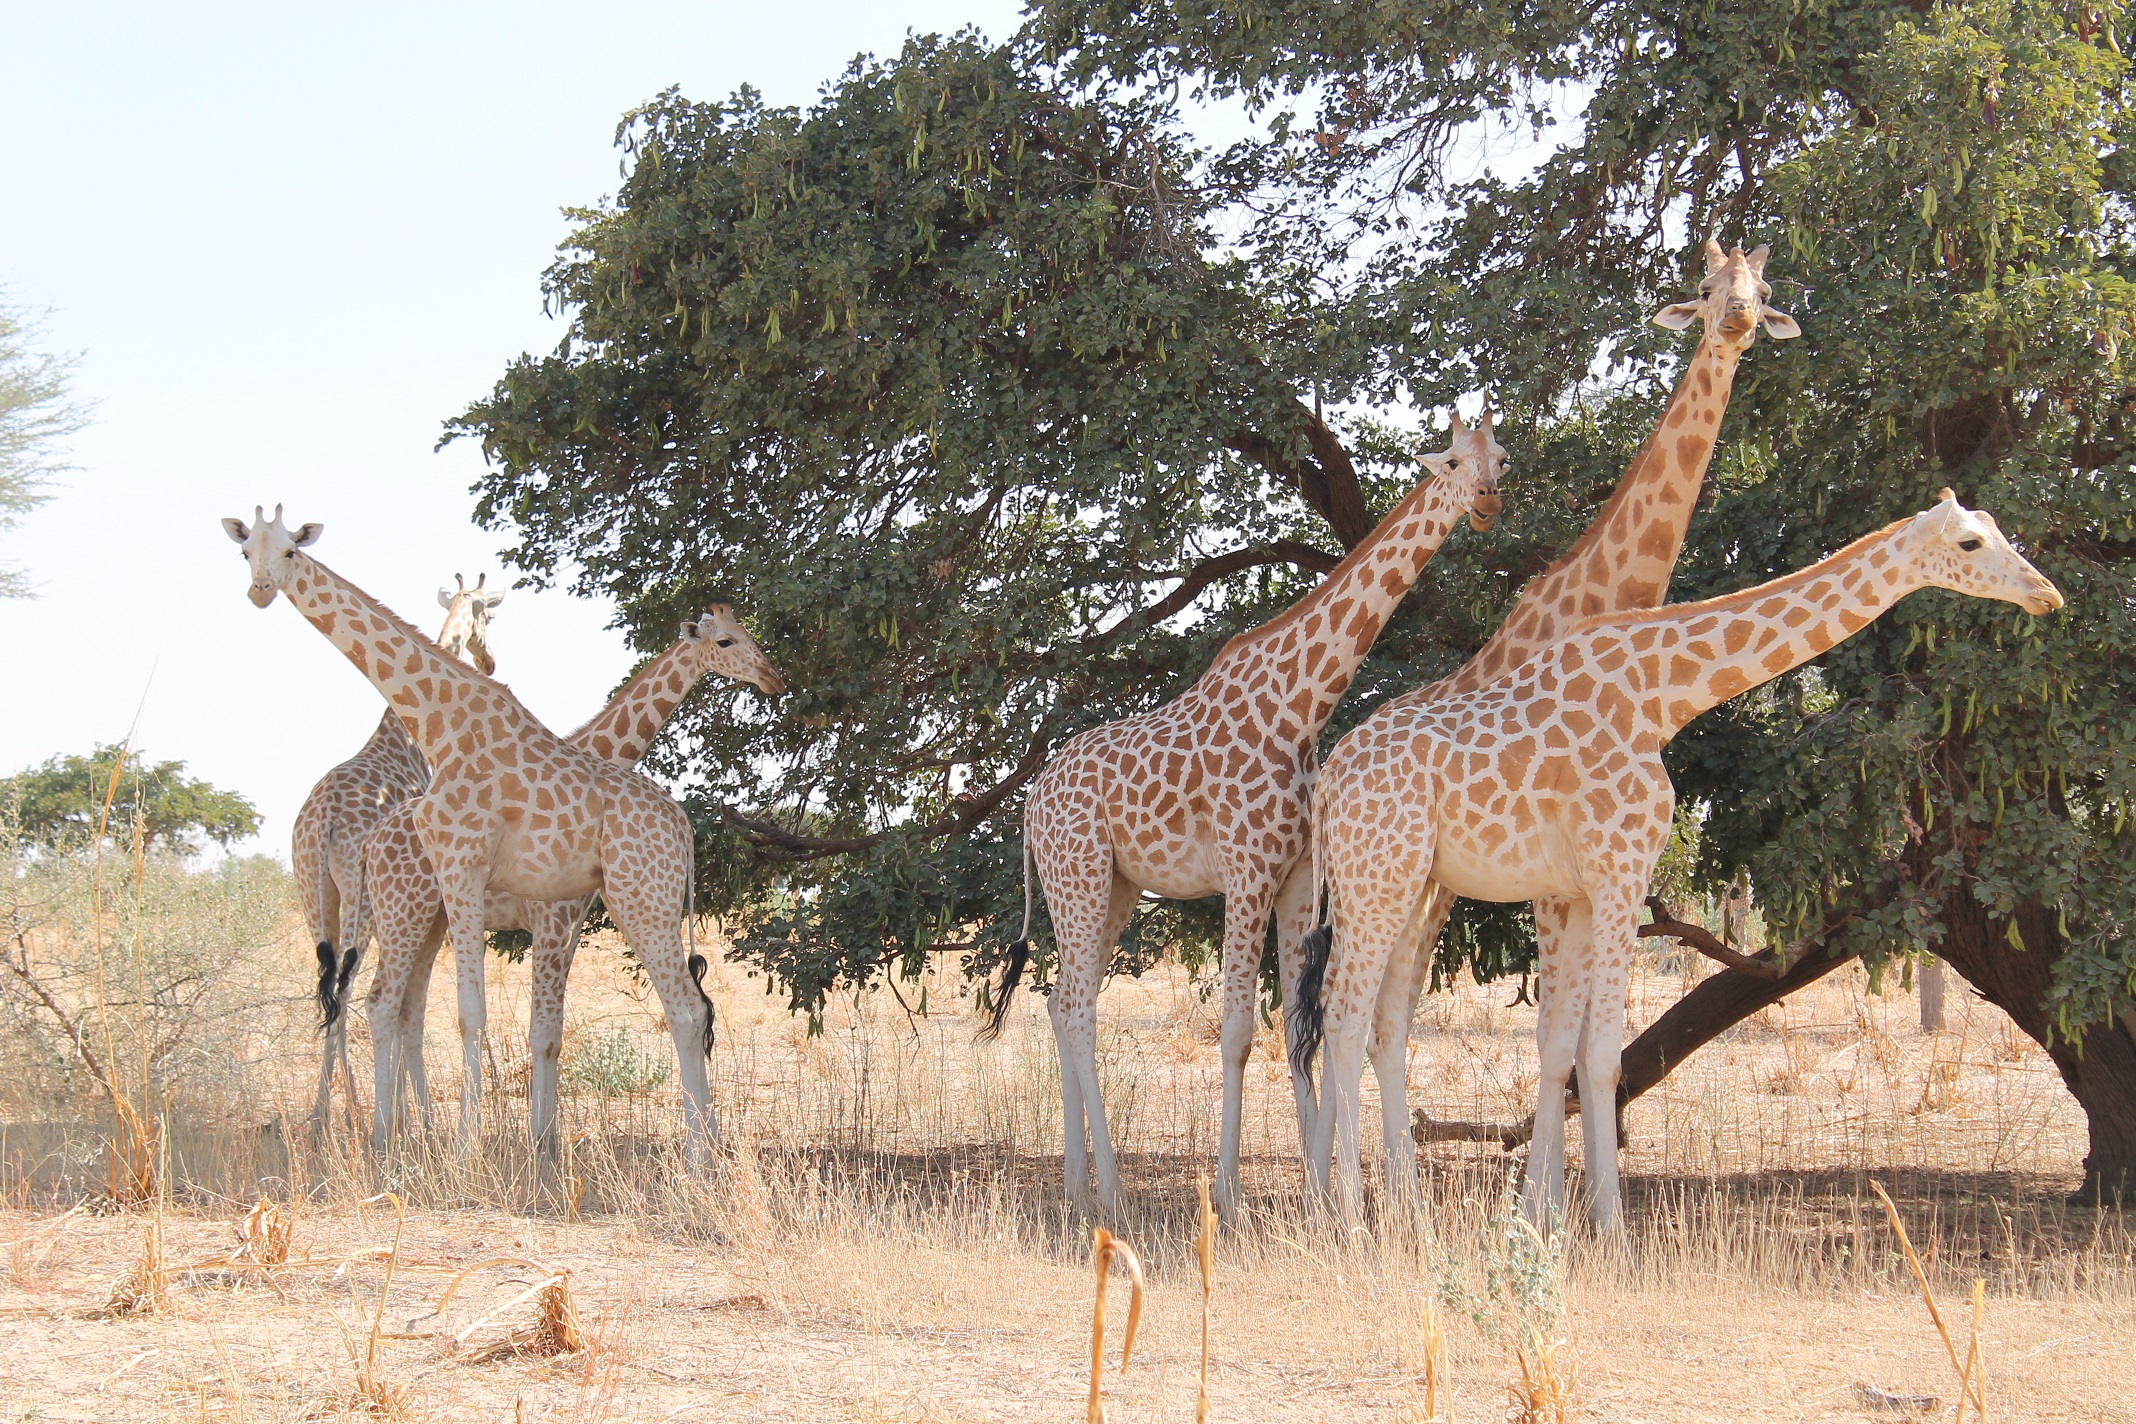 Kouré Wild Giraffes 1 Day Visit